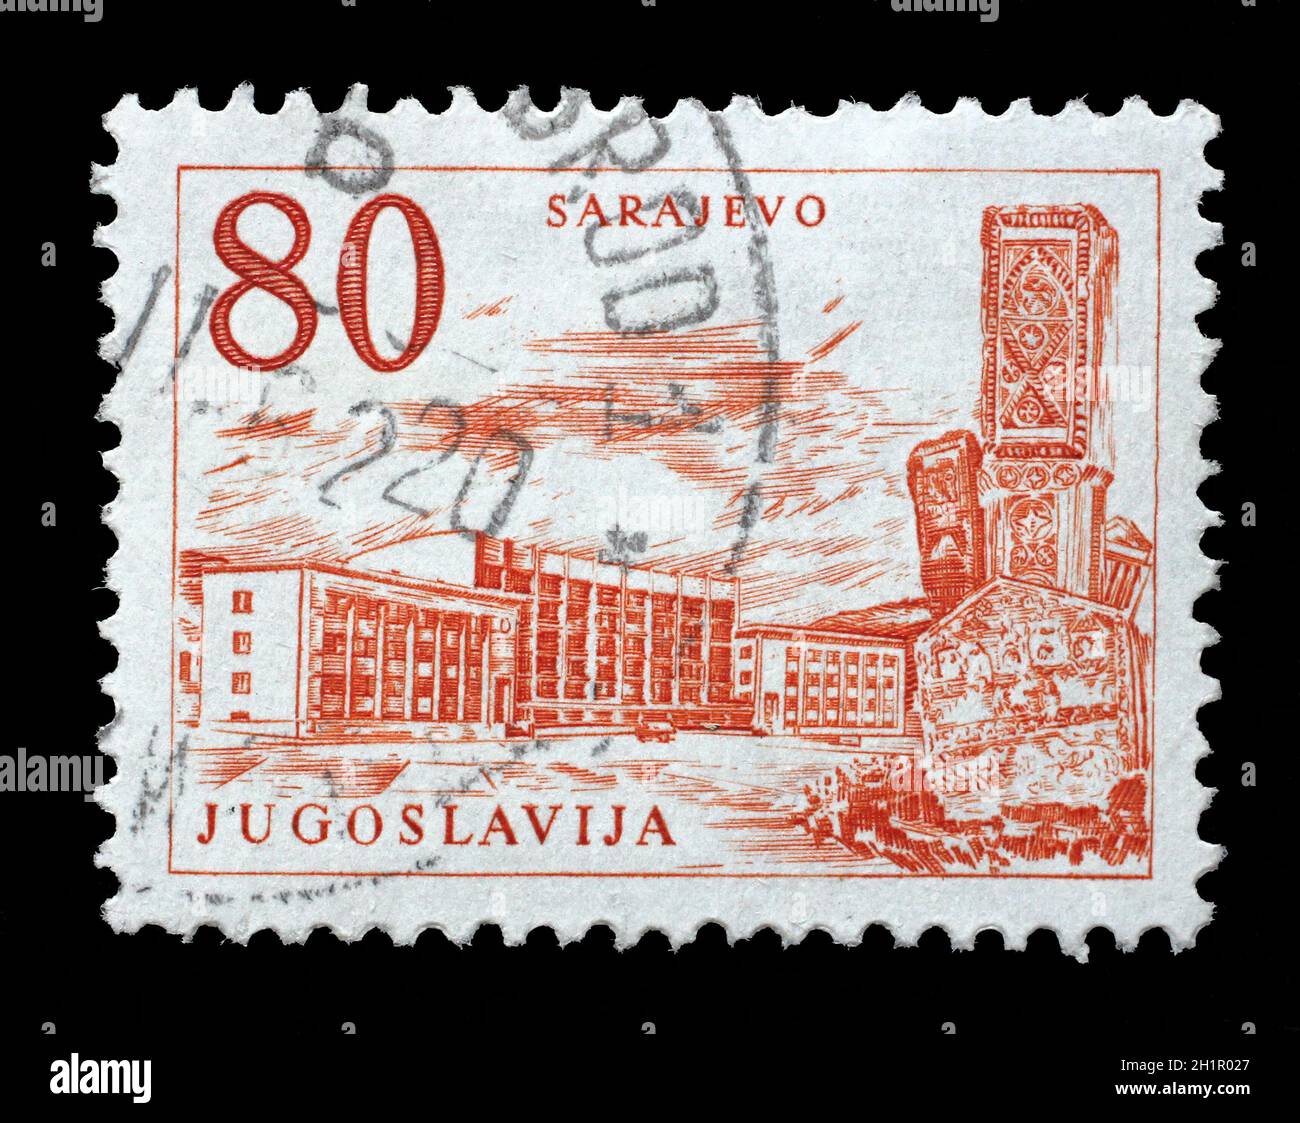 Timbres en Yougoslavie montre Sarajevo gare et obélisque, Bosnie-Herzégovine, vers 1958. Banque D'Images